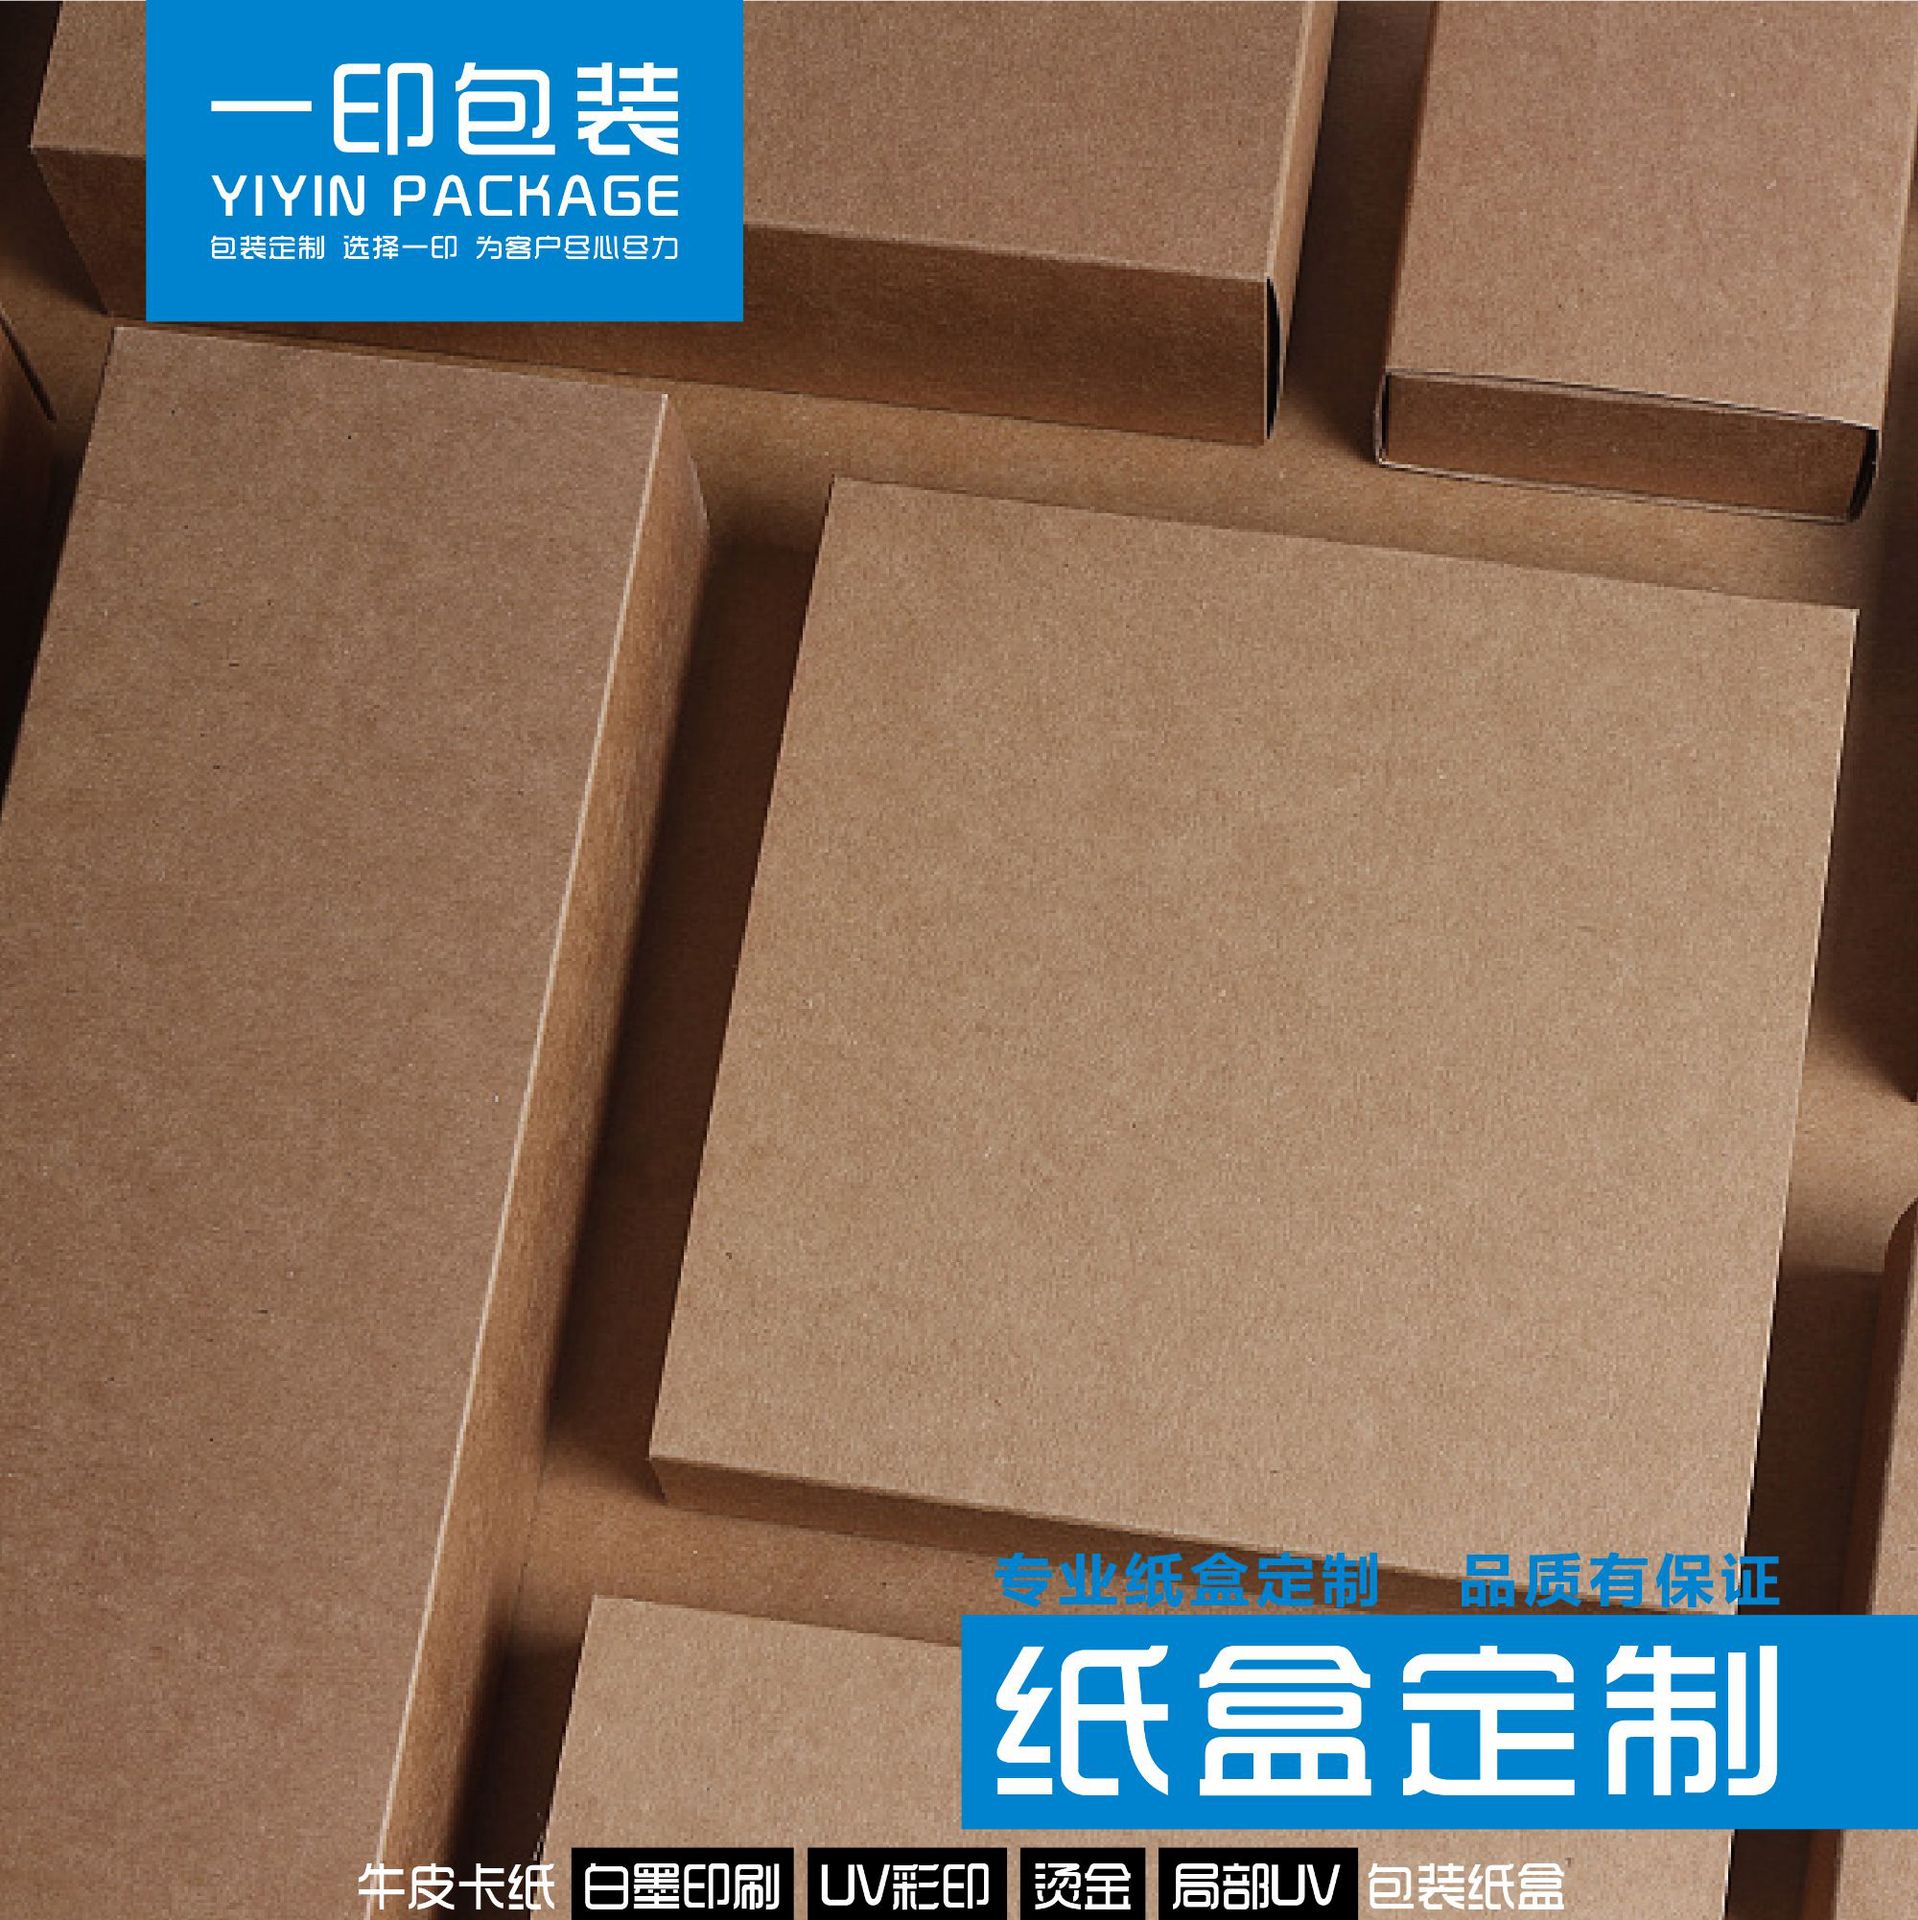 [1]牛皮纸盒天地盖盒飞机盒瓦楞盒包装盒彩盒印刷公司厂家